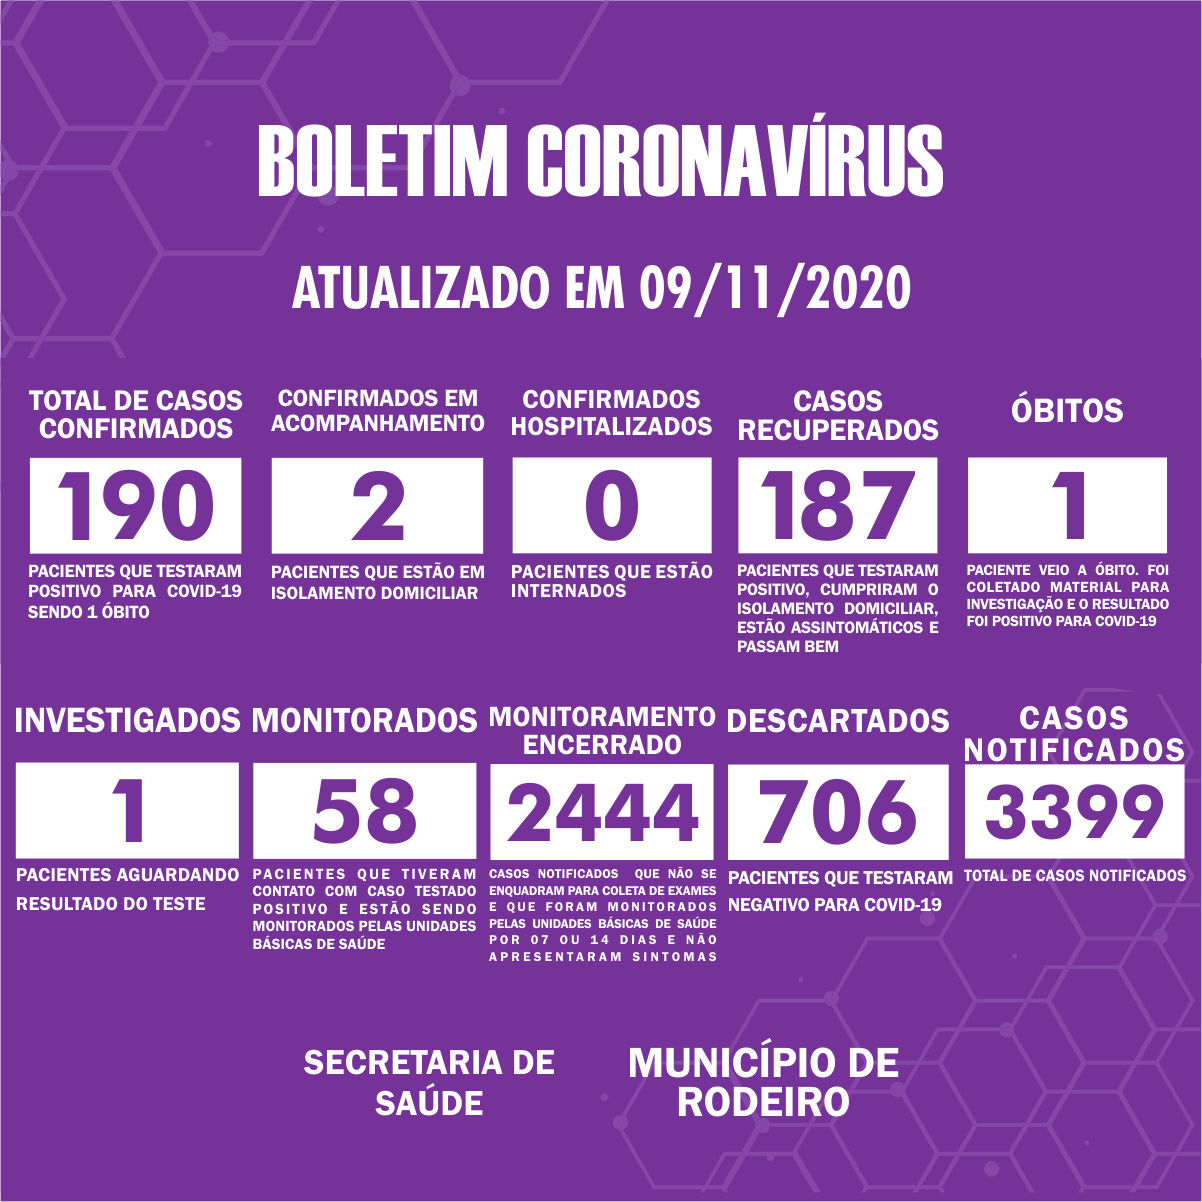 Boletim Epidemiológico do Município de Rodeiro sobre coronavírus, atualizado em 09/11/2020